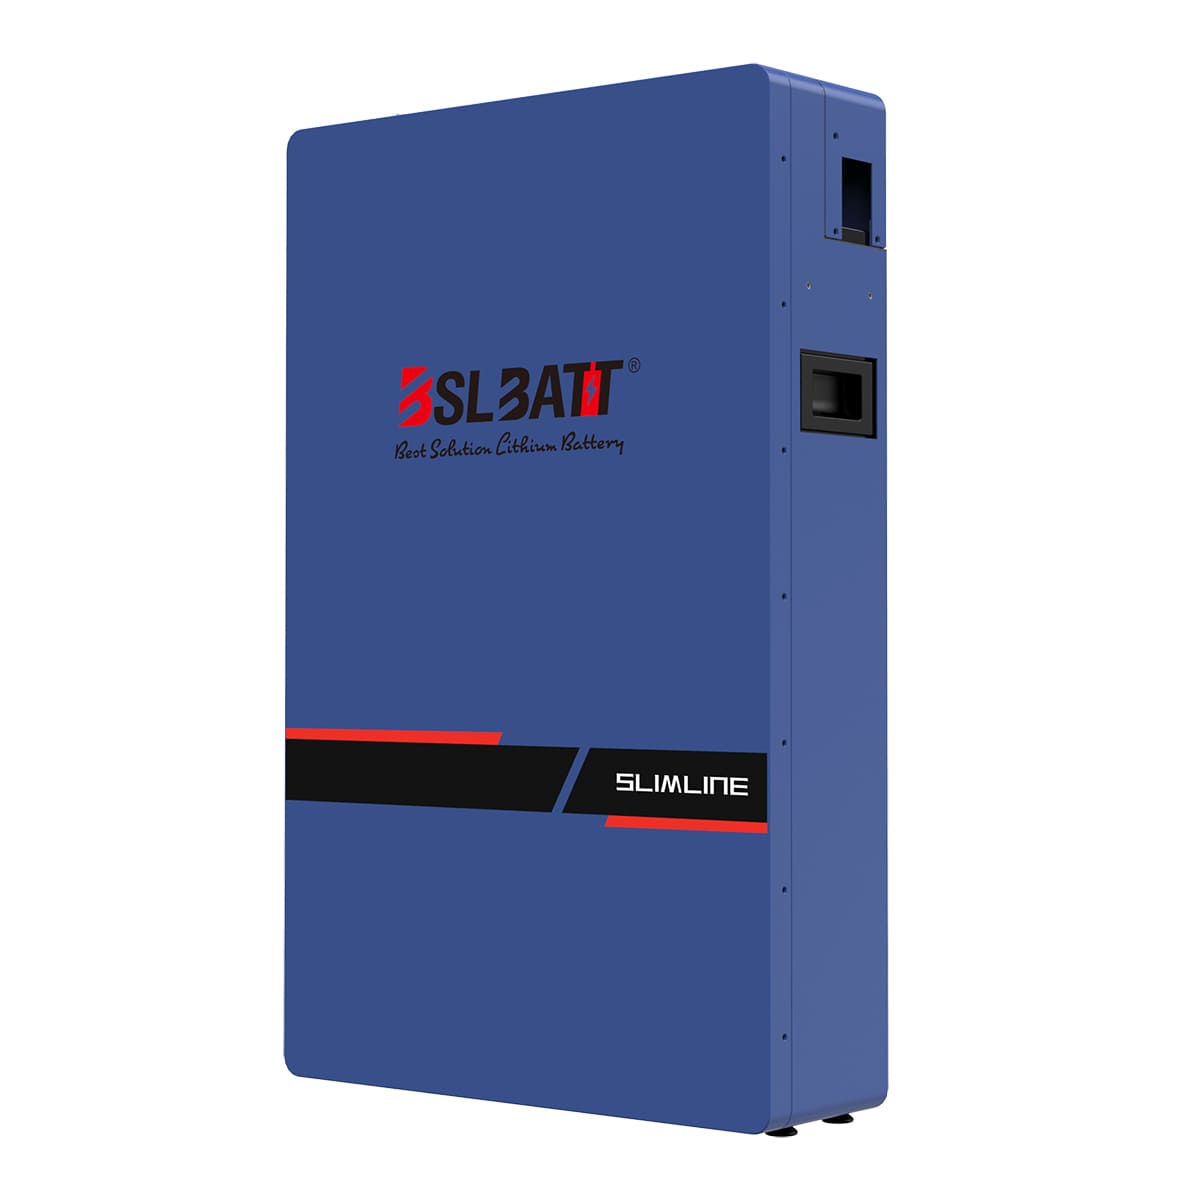 15kWh Lithium Battery For Solar | BSLBATT